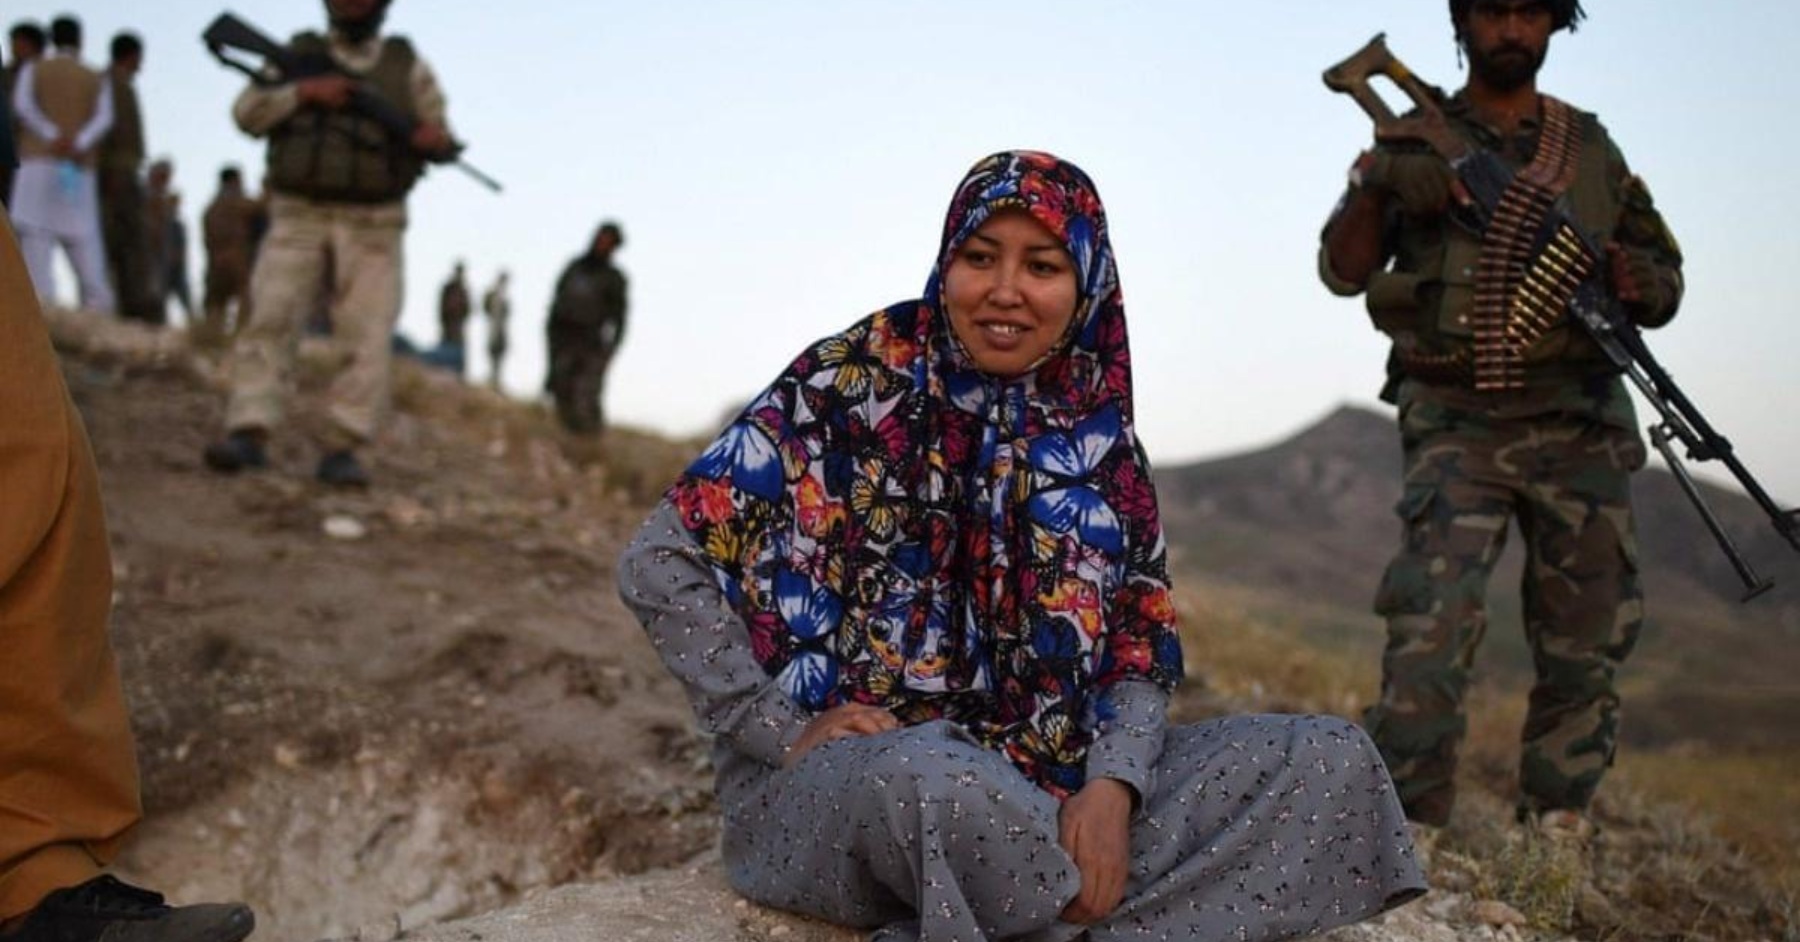 სალიმა მაზარი - ავღანელი გუბერნატორი, რომელმაც თალიბებს წინააღმდეგობა გაუწია